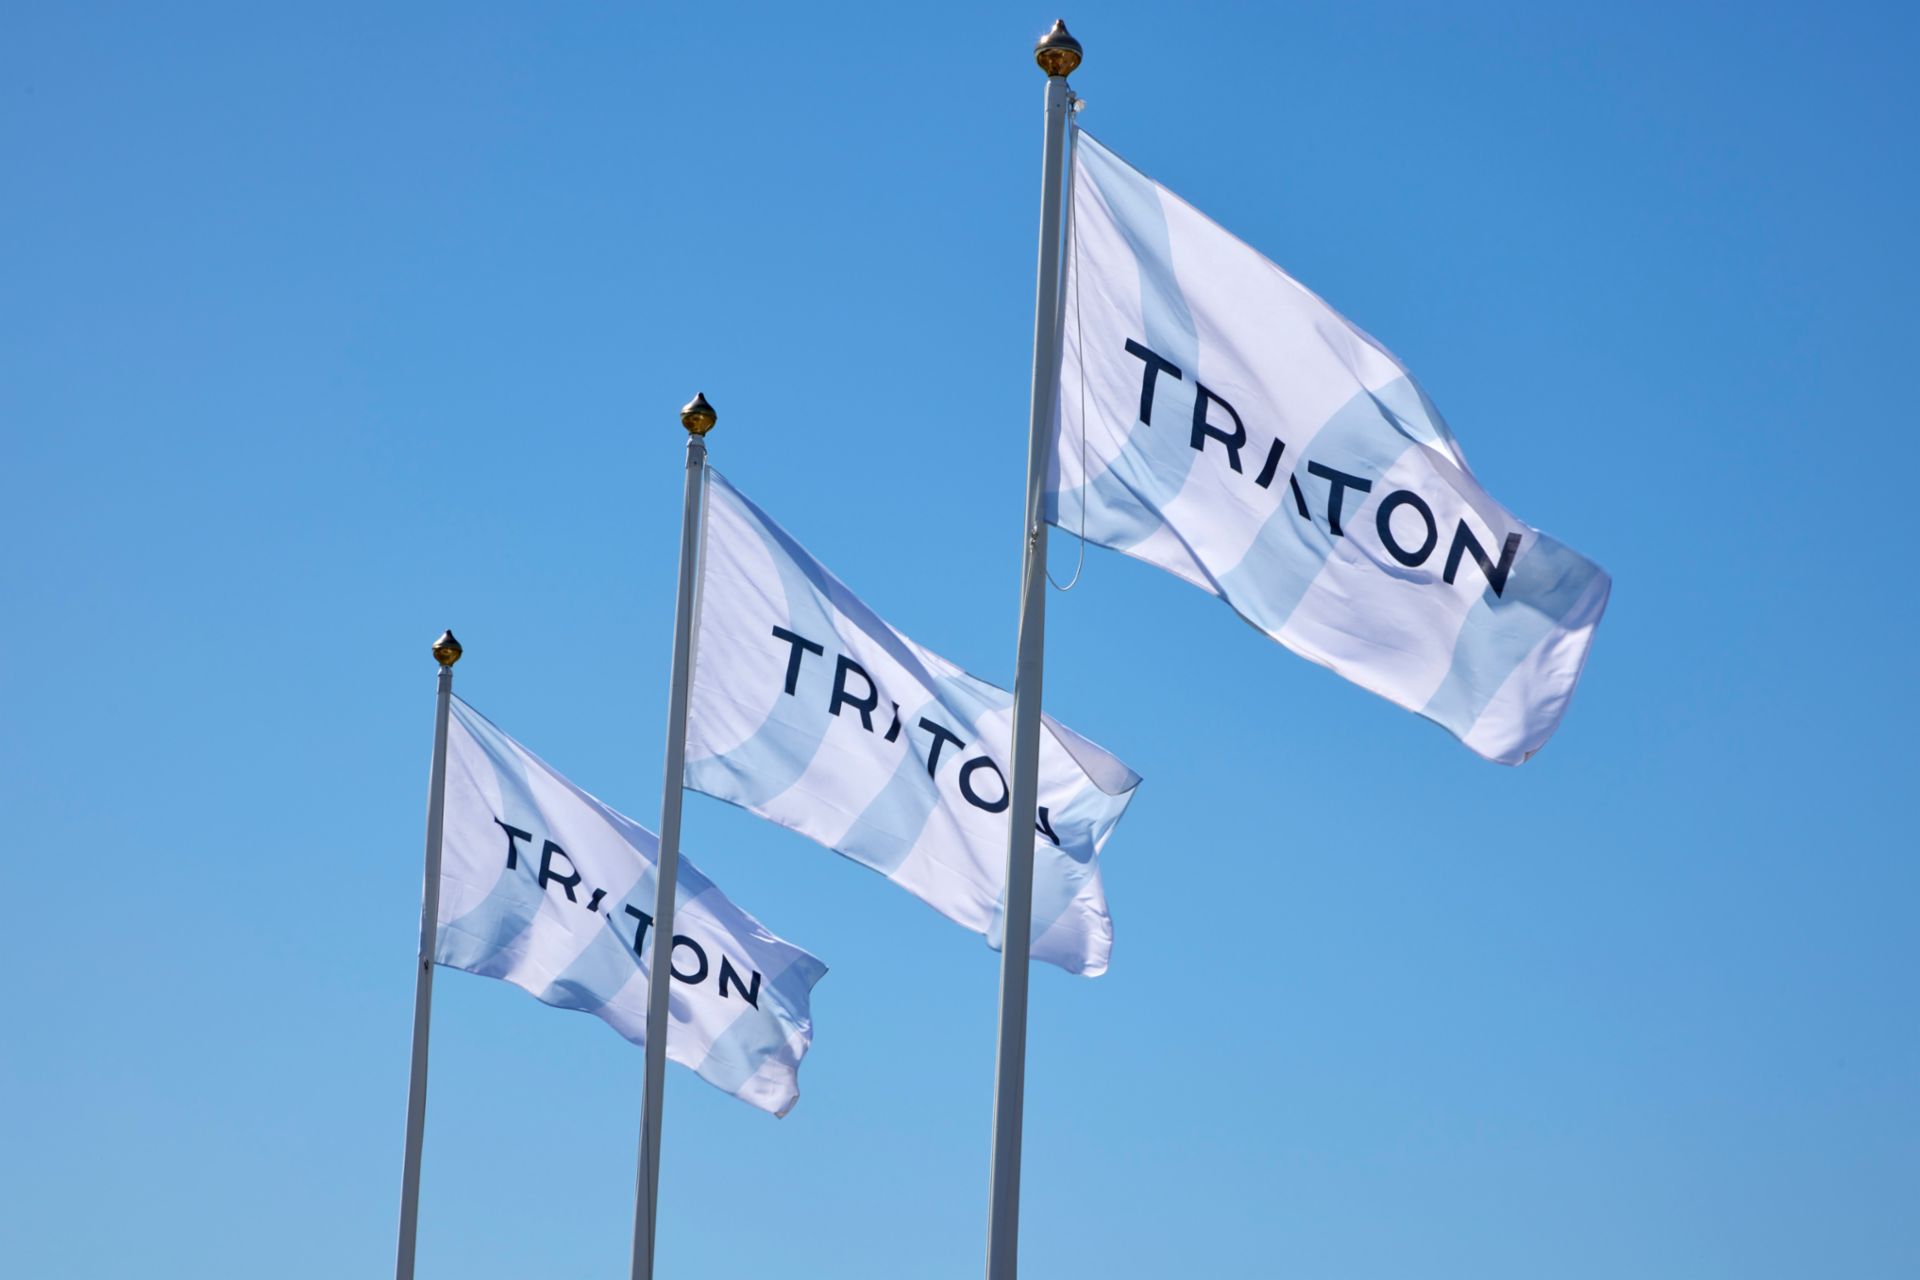  3 Flaggen mit dem Logo von TRATON nebeneinander im Wind